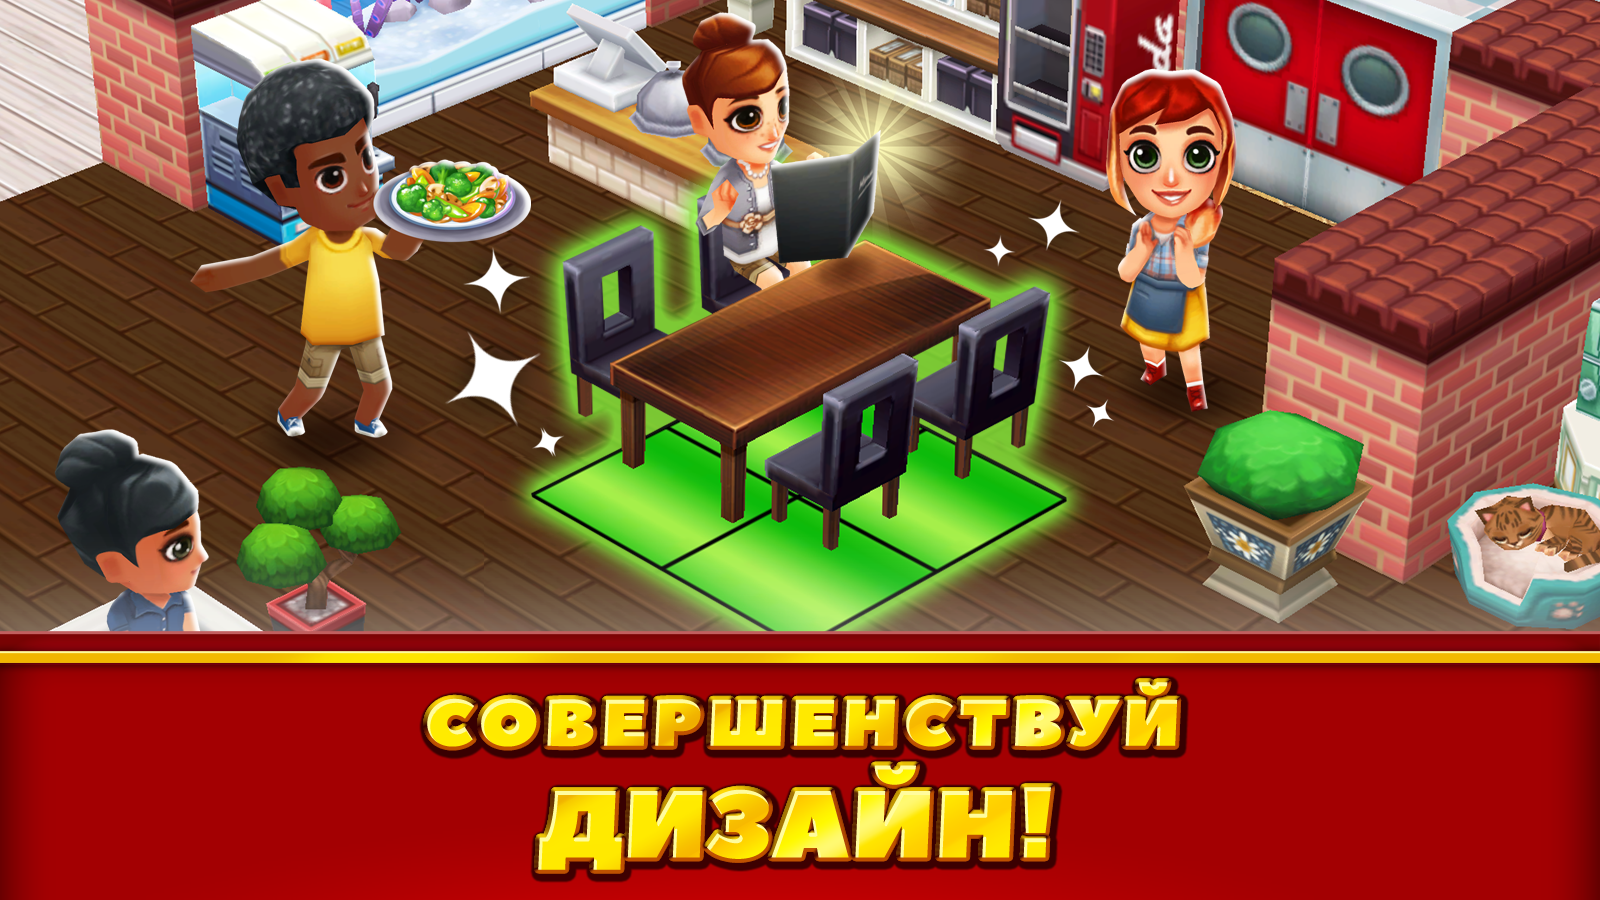 Food Street игра ресторан. Dream Restaurant игра. Игра строить ресторан. Игра симулятор кафе.